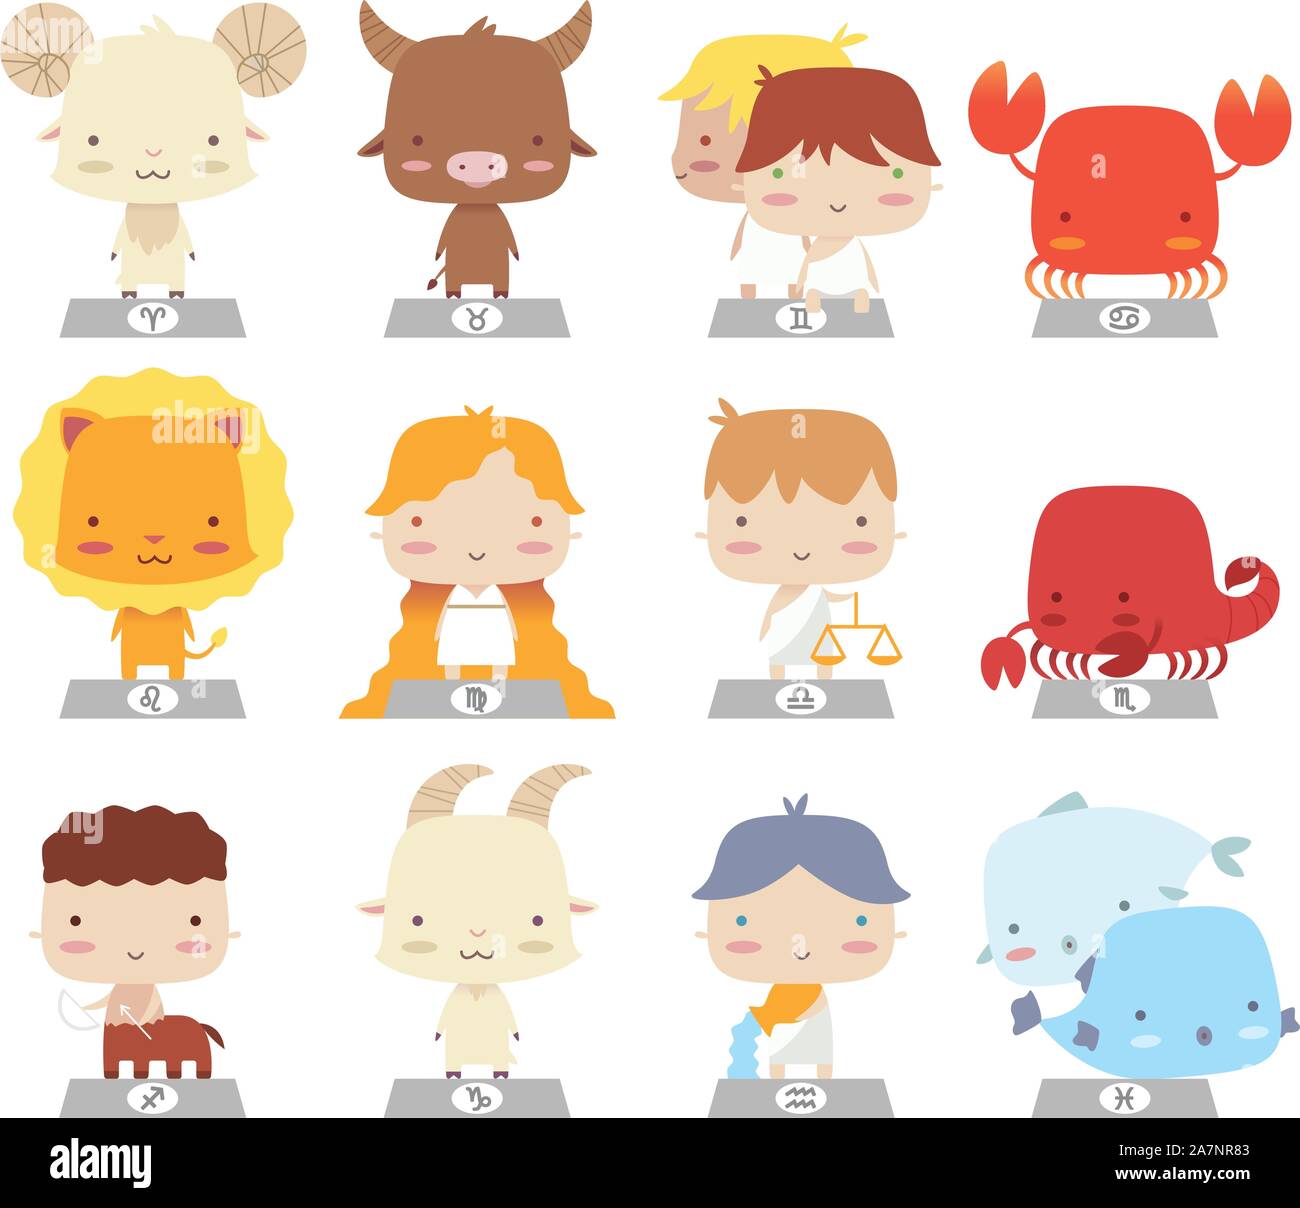 cartoon zodiac characters manga symbols Stock Vector